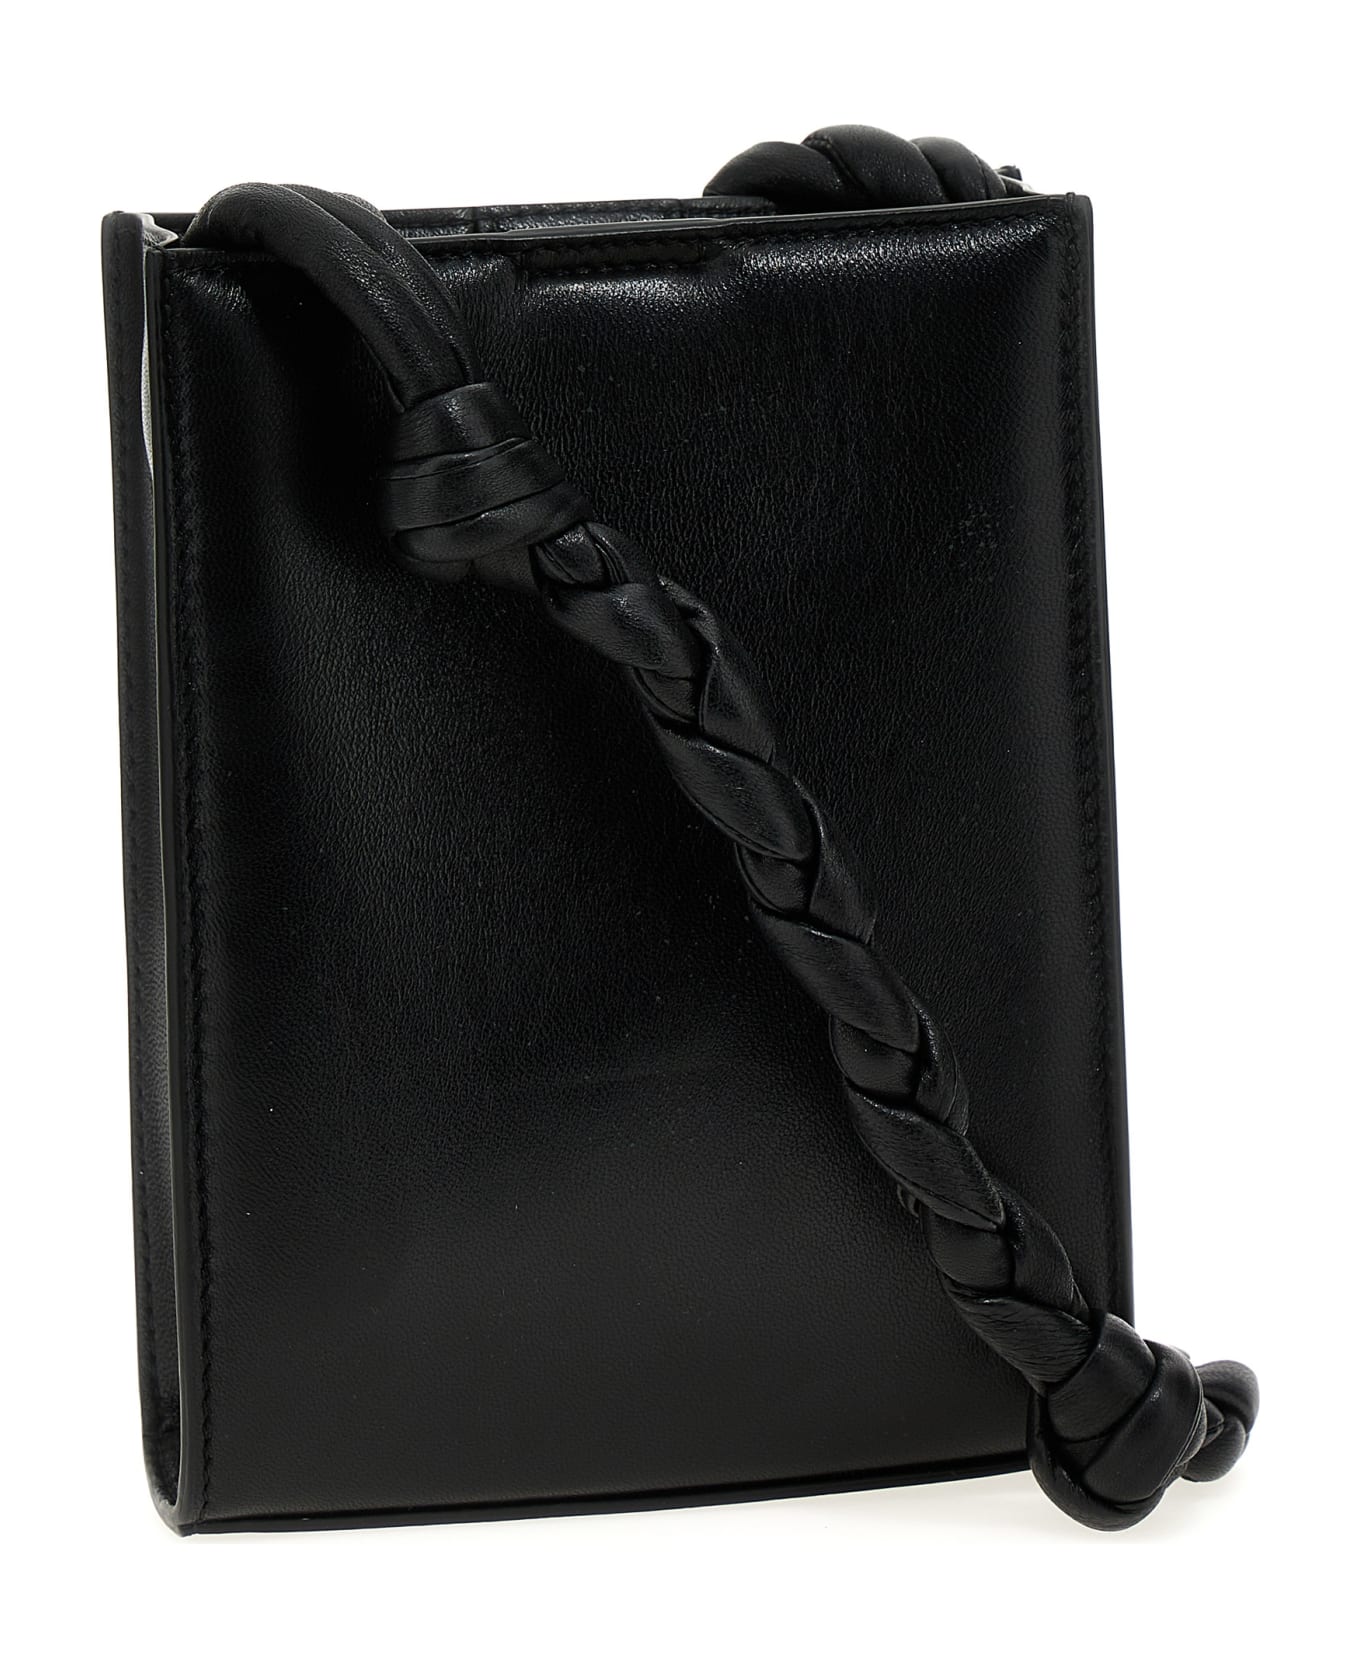 Jil Sander 'tangle' Crossbody Bag - Black   クラッチバッグ